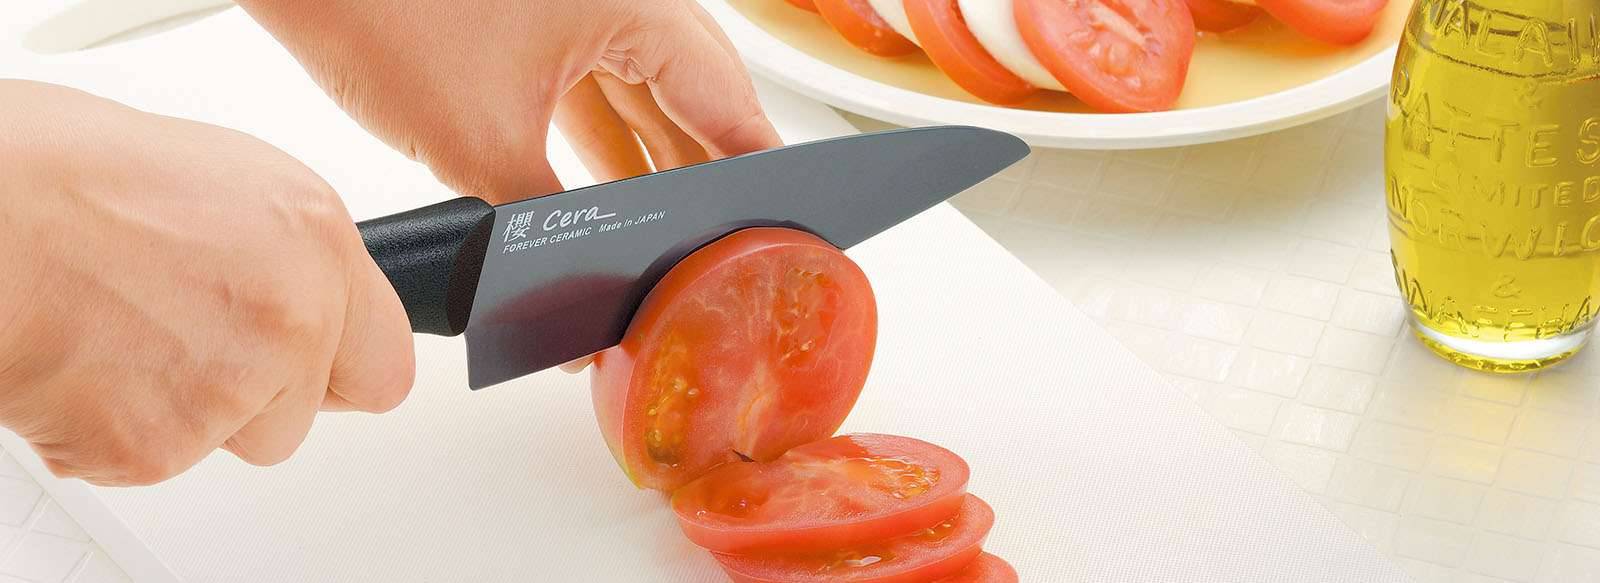 Чем и как можно в домашних условиях поточить керамический нож?